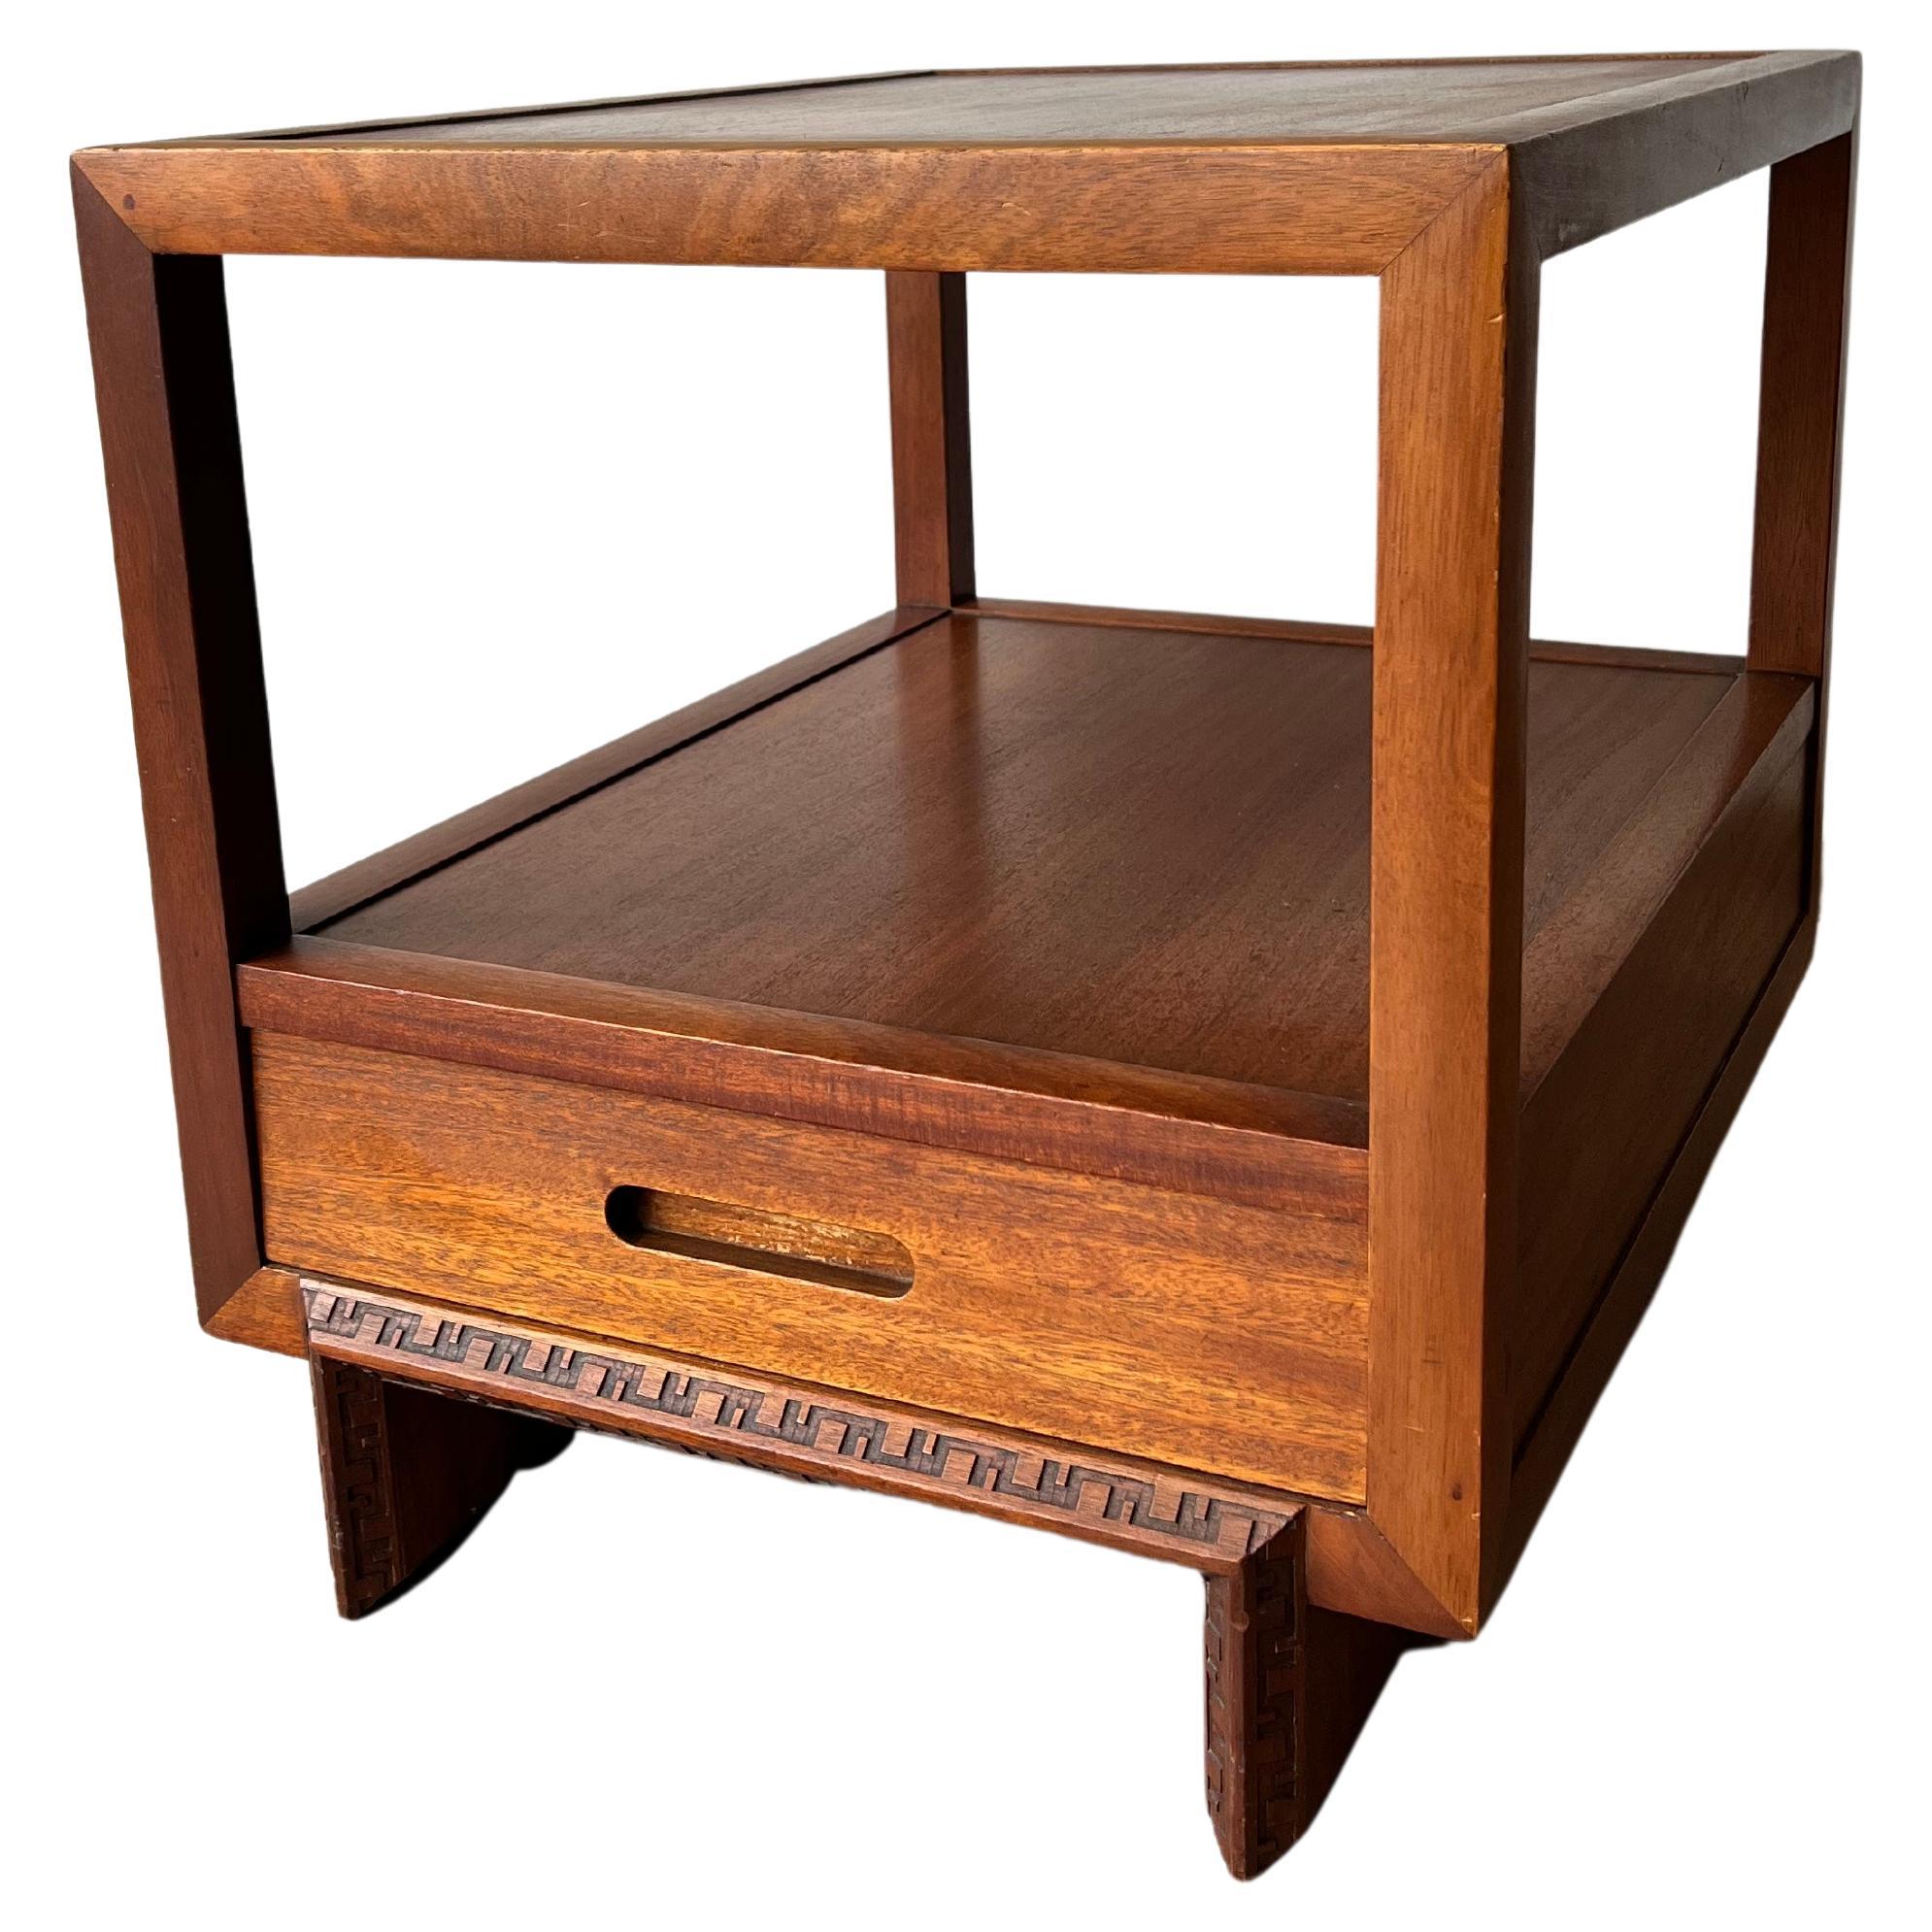 Niedriger Tisch von Frank Lloyd Wright